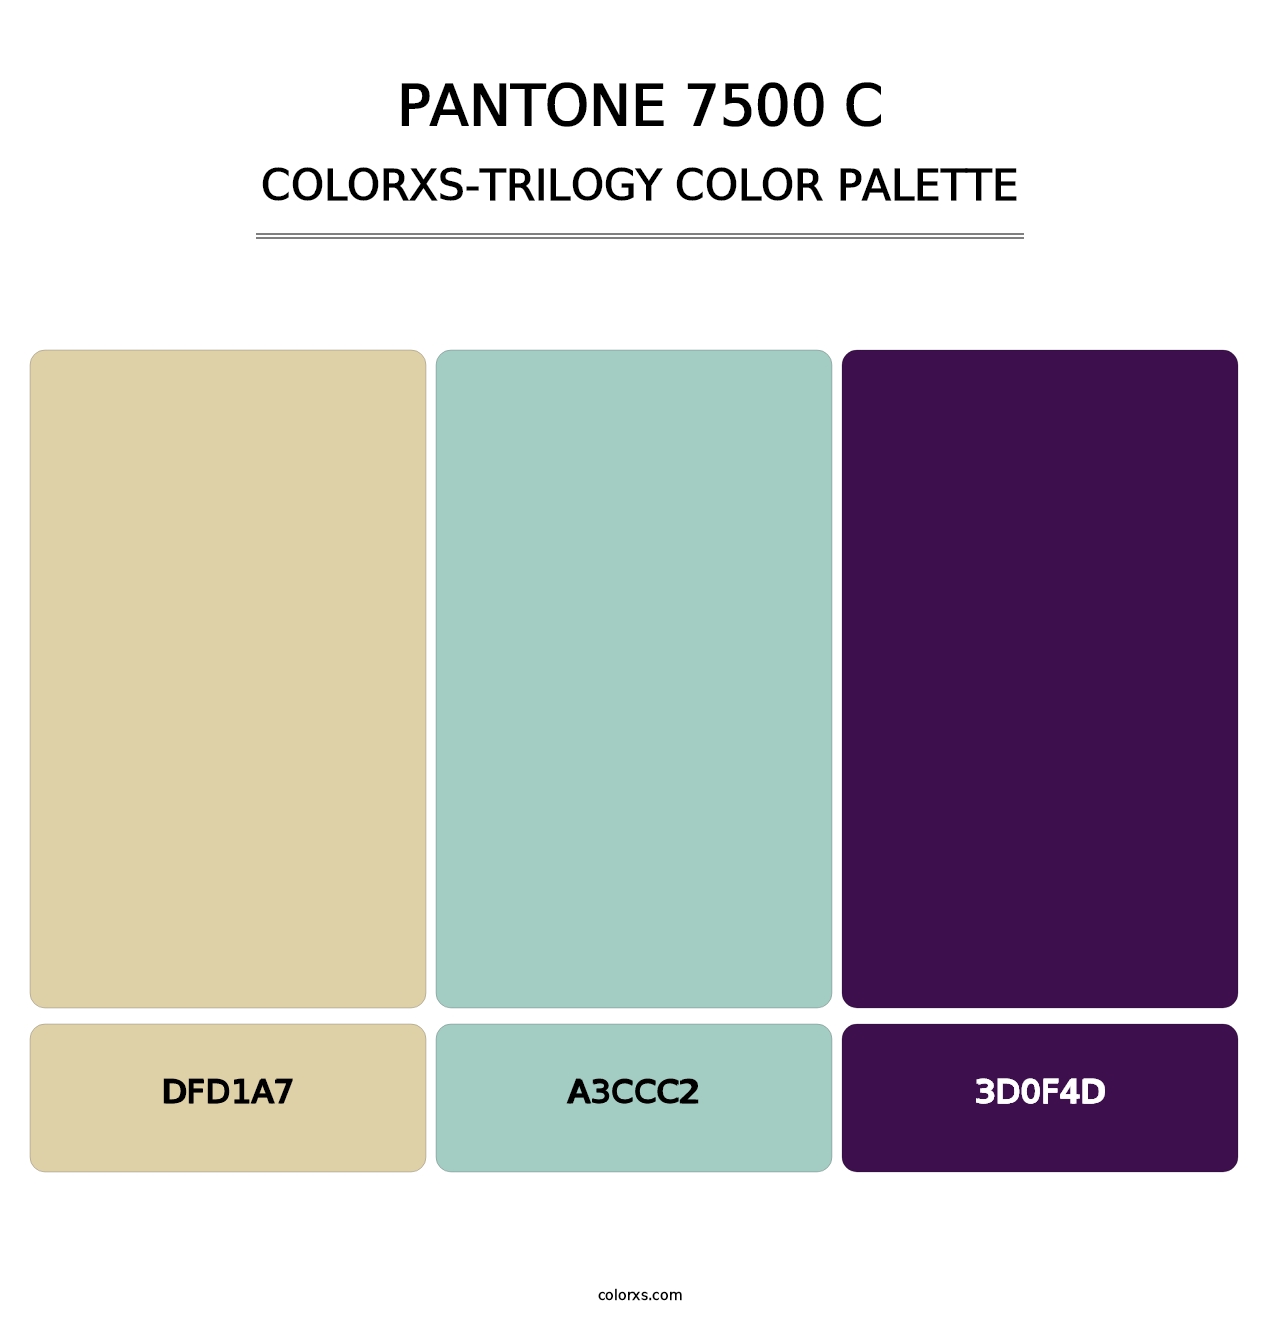 PANTONE 7500 C - Colorxs Trilogy Palette